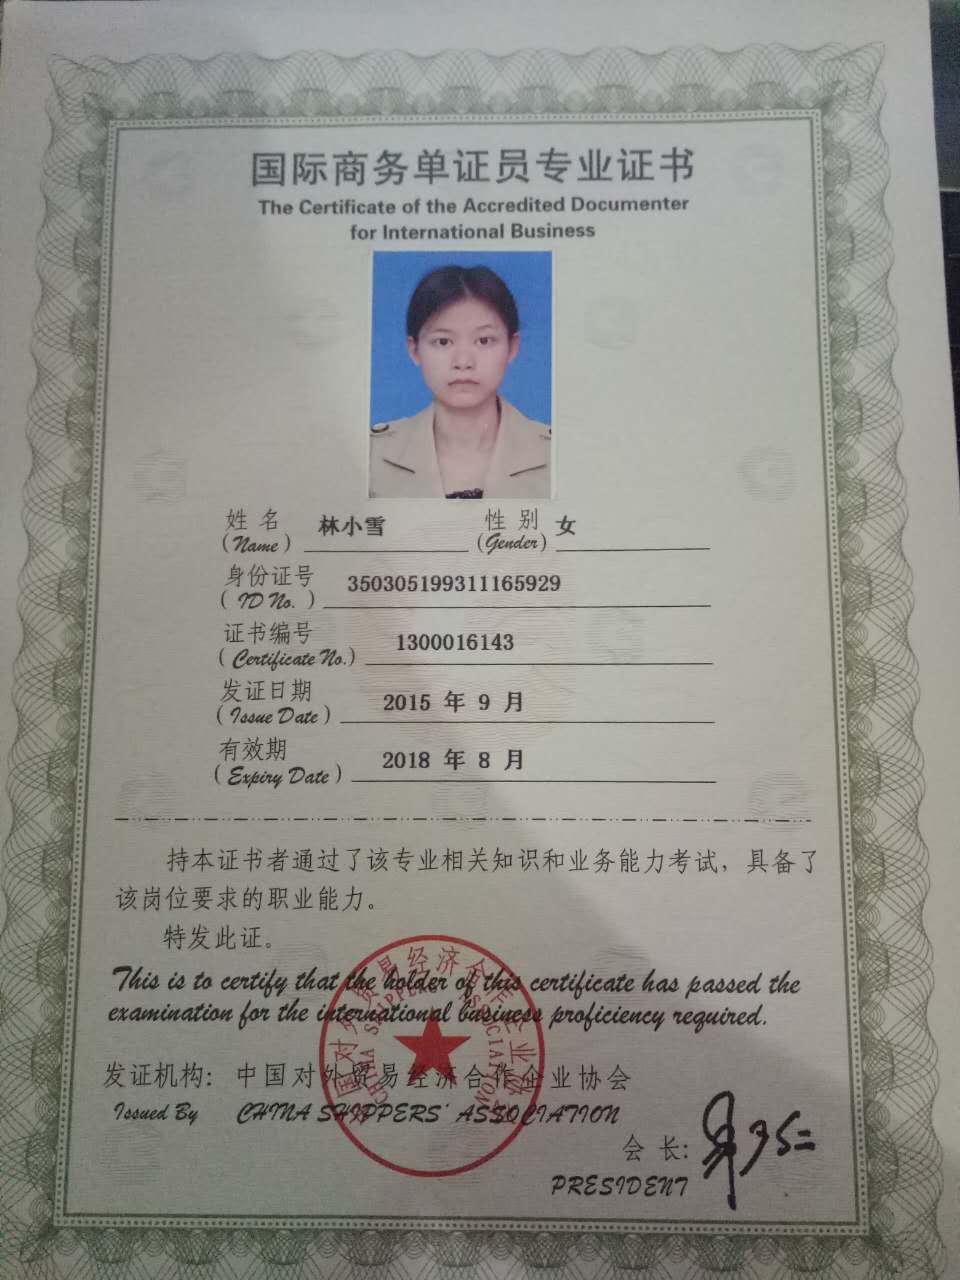 证书名称:国际商务单证员专业证书发证机关:中国对外贸易经济合作企业